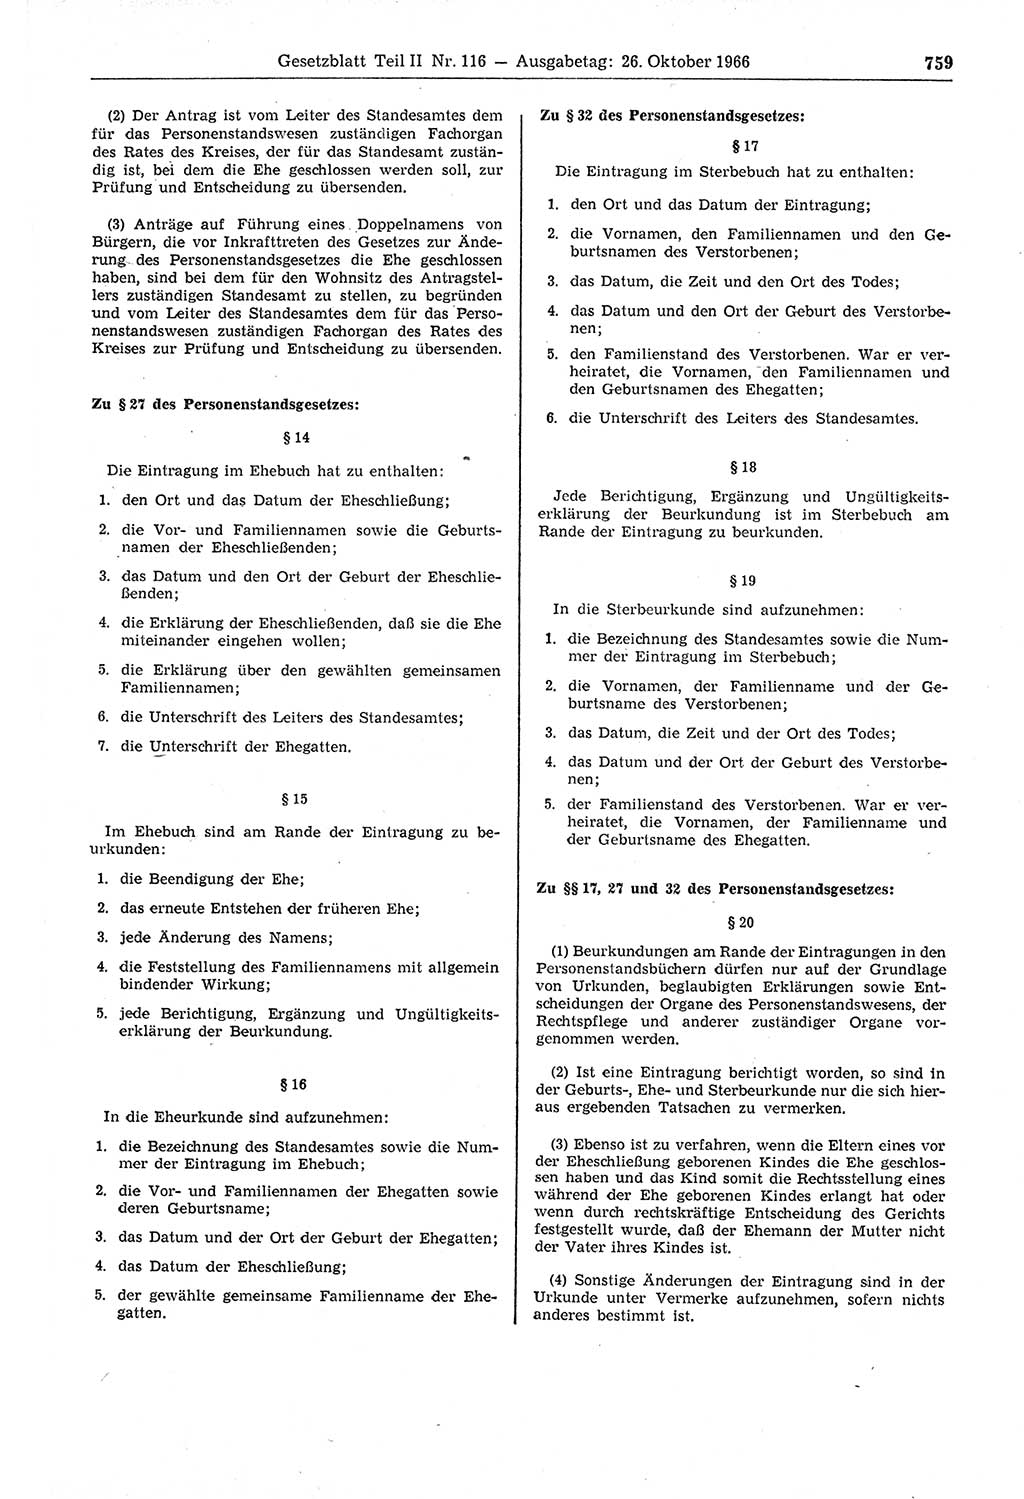 Gesetzblatt (GBl.) der Deutschen Demokratischen Republik (DDR) Teil ⅠⅠ 1966, Seite 759 (GBl. DDR ⅠⅠ 1966, S. 759)